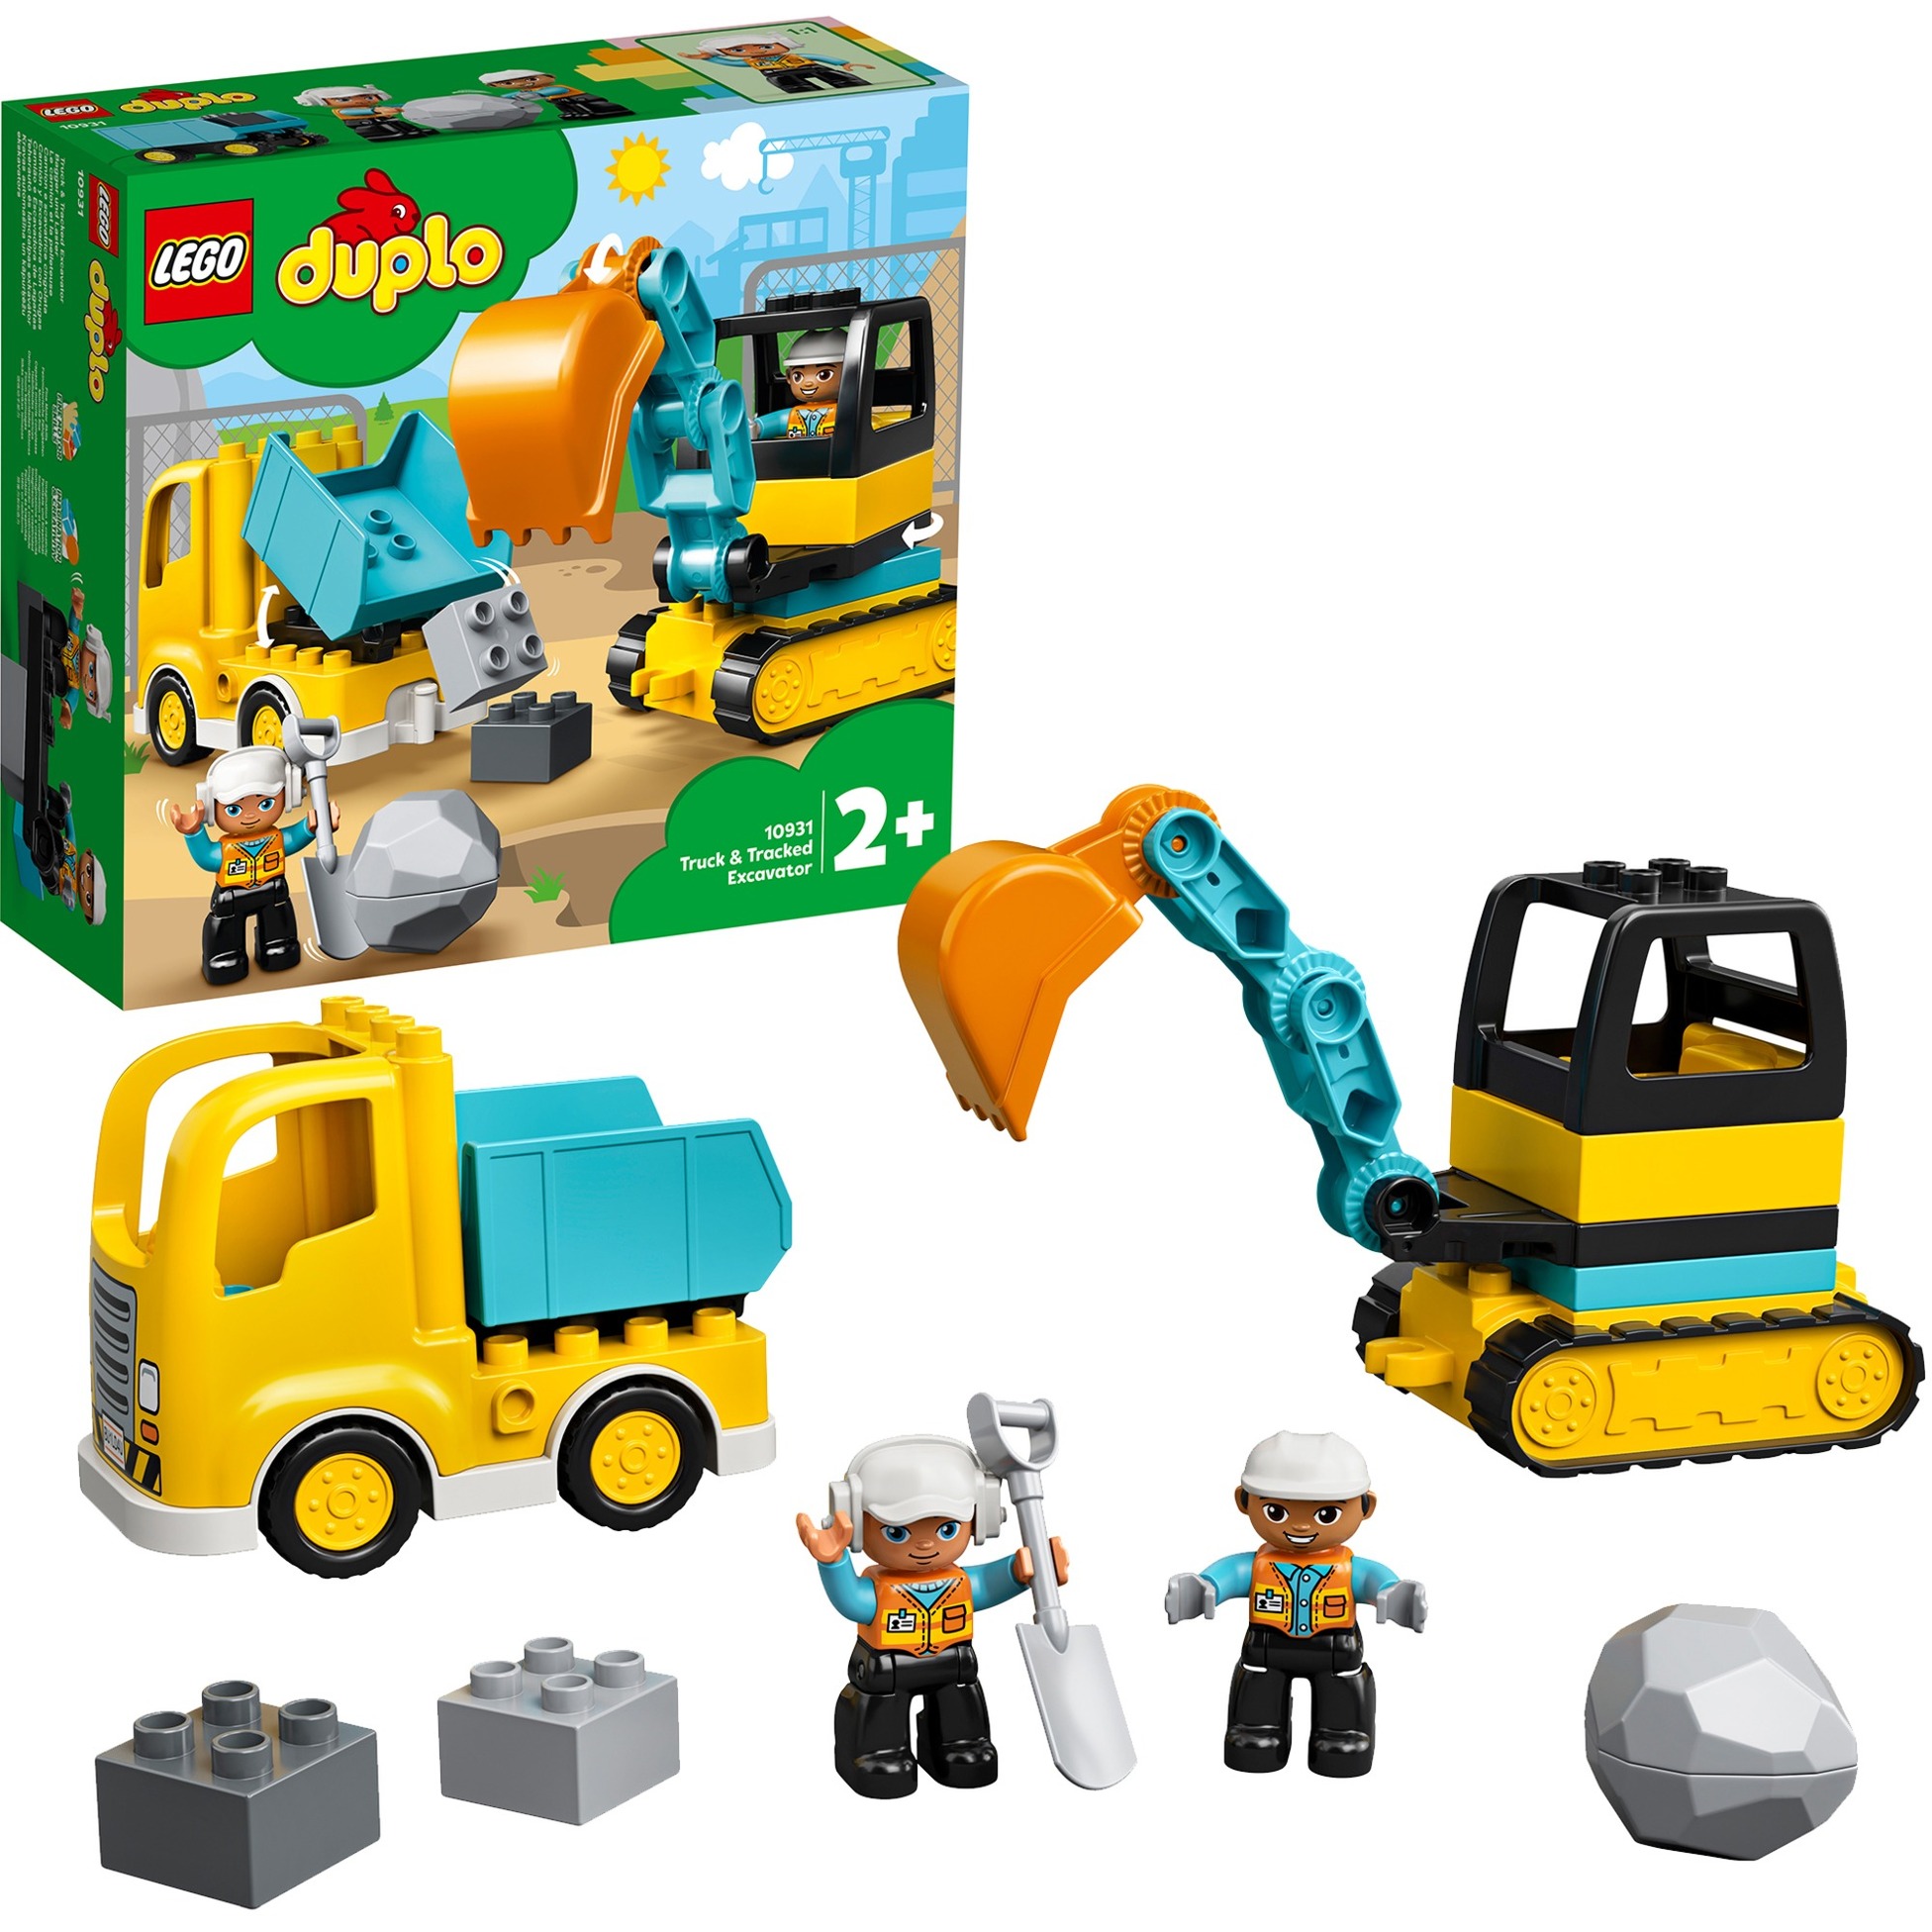 Image of Alternate - 10931 DUPLO Bagger und Laster, Konstruktionsspielzeug online einkaufen bei Alternate